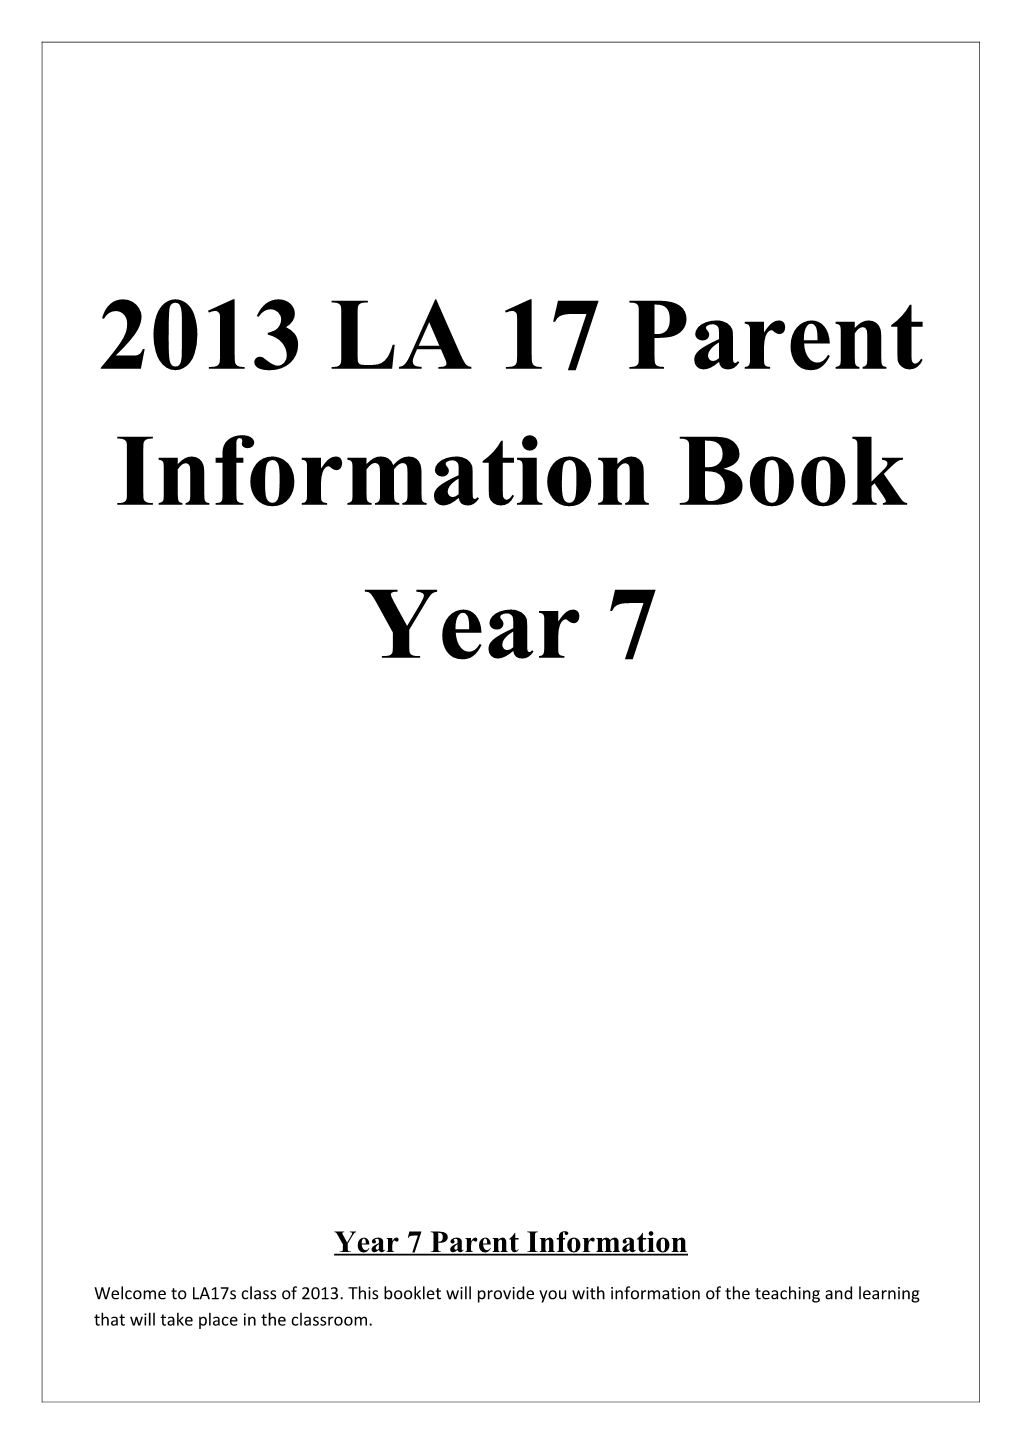 Year 6 Parent Information